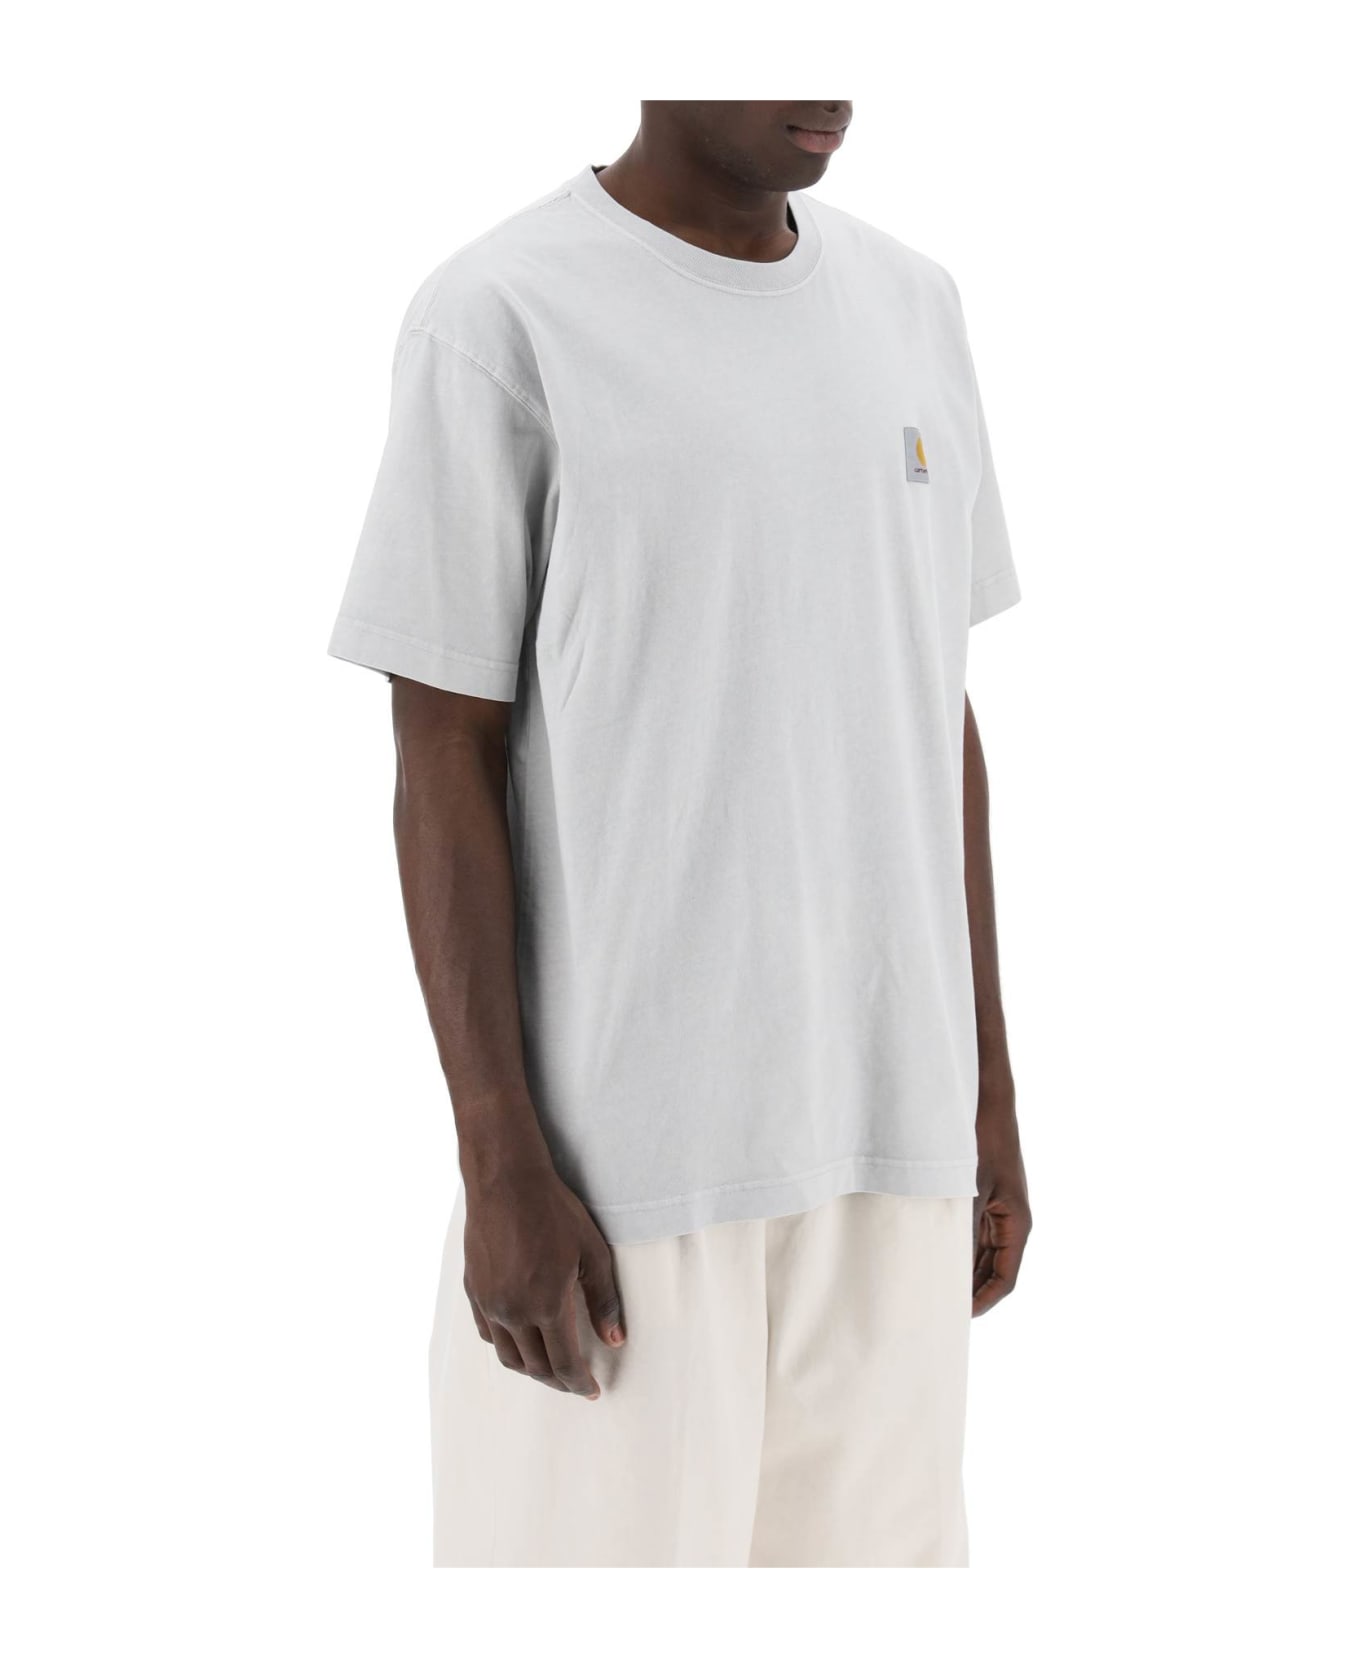 Carhartt Nelson T-shirt - Ye.gd Sonic Silver Garment Dyed